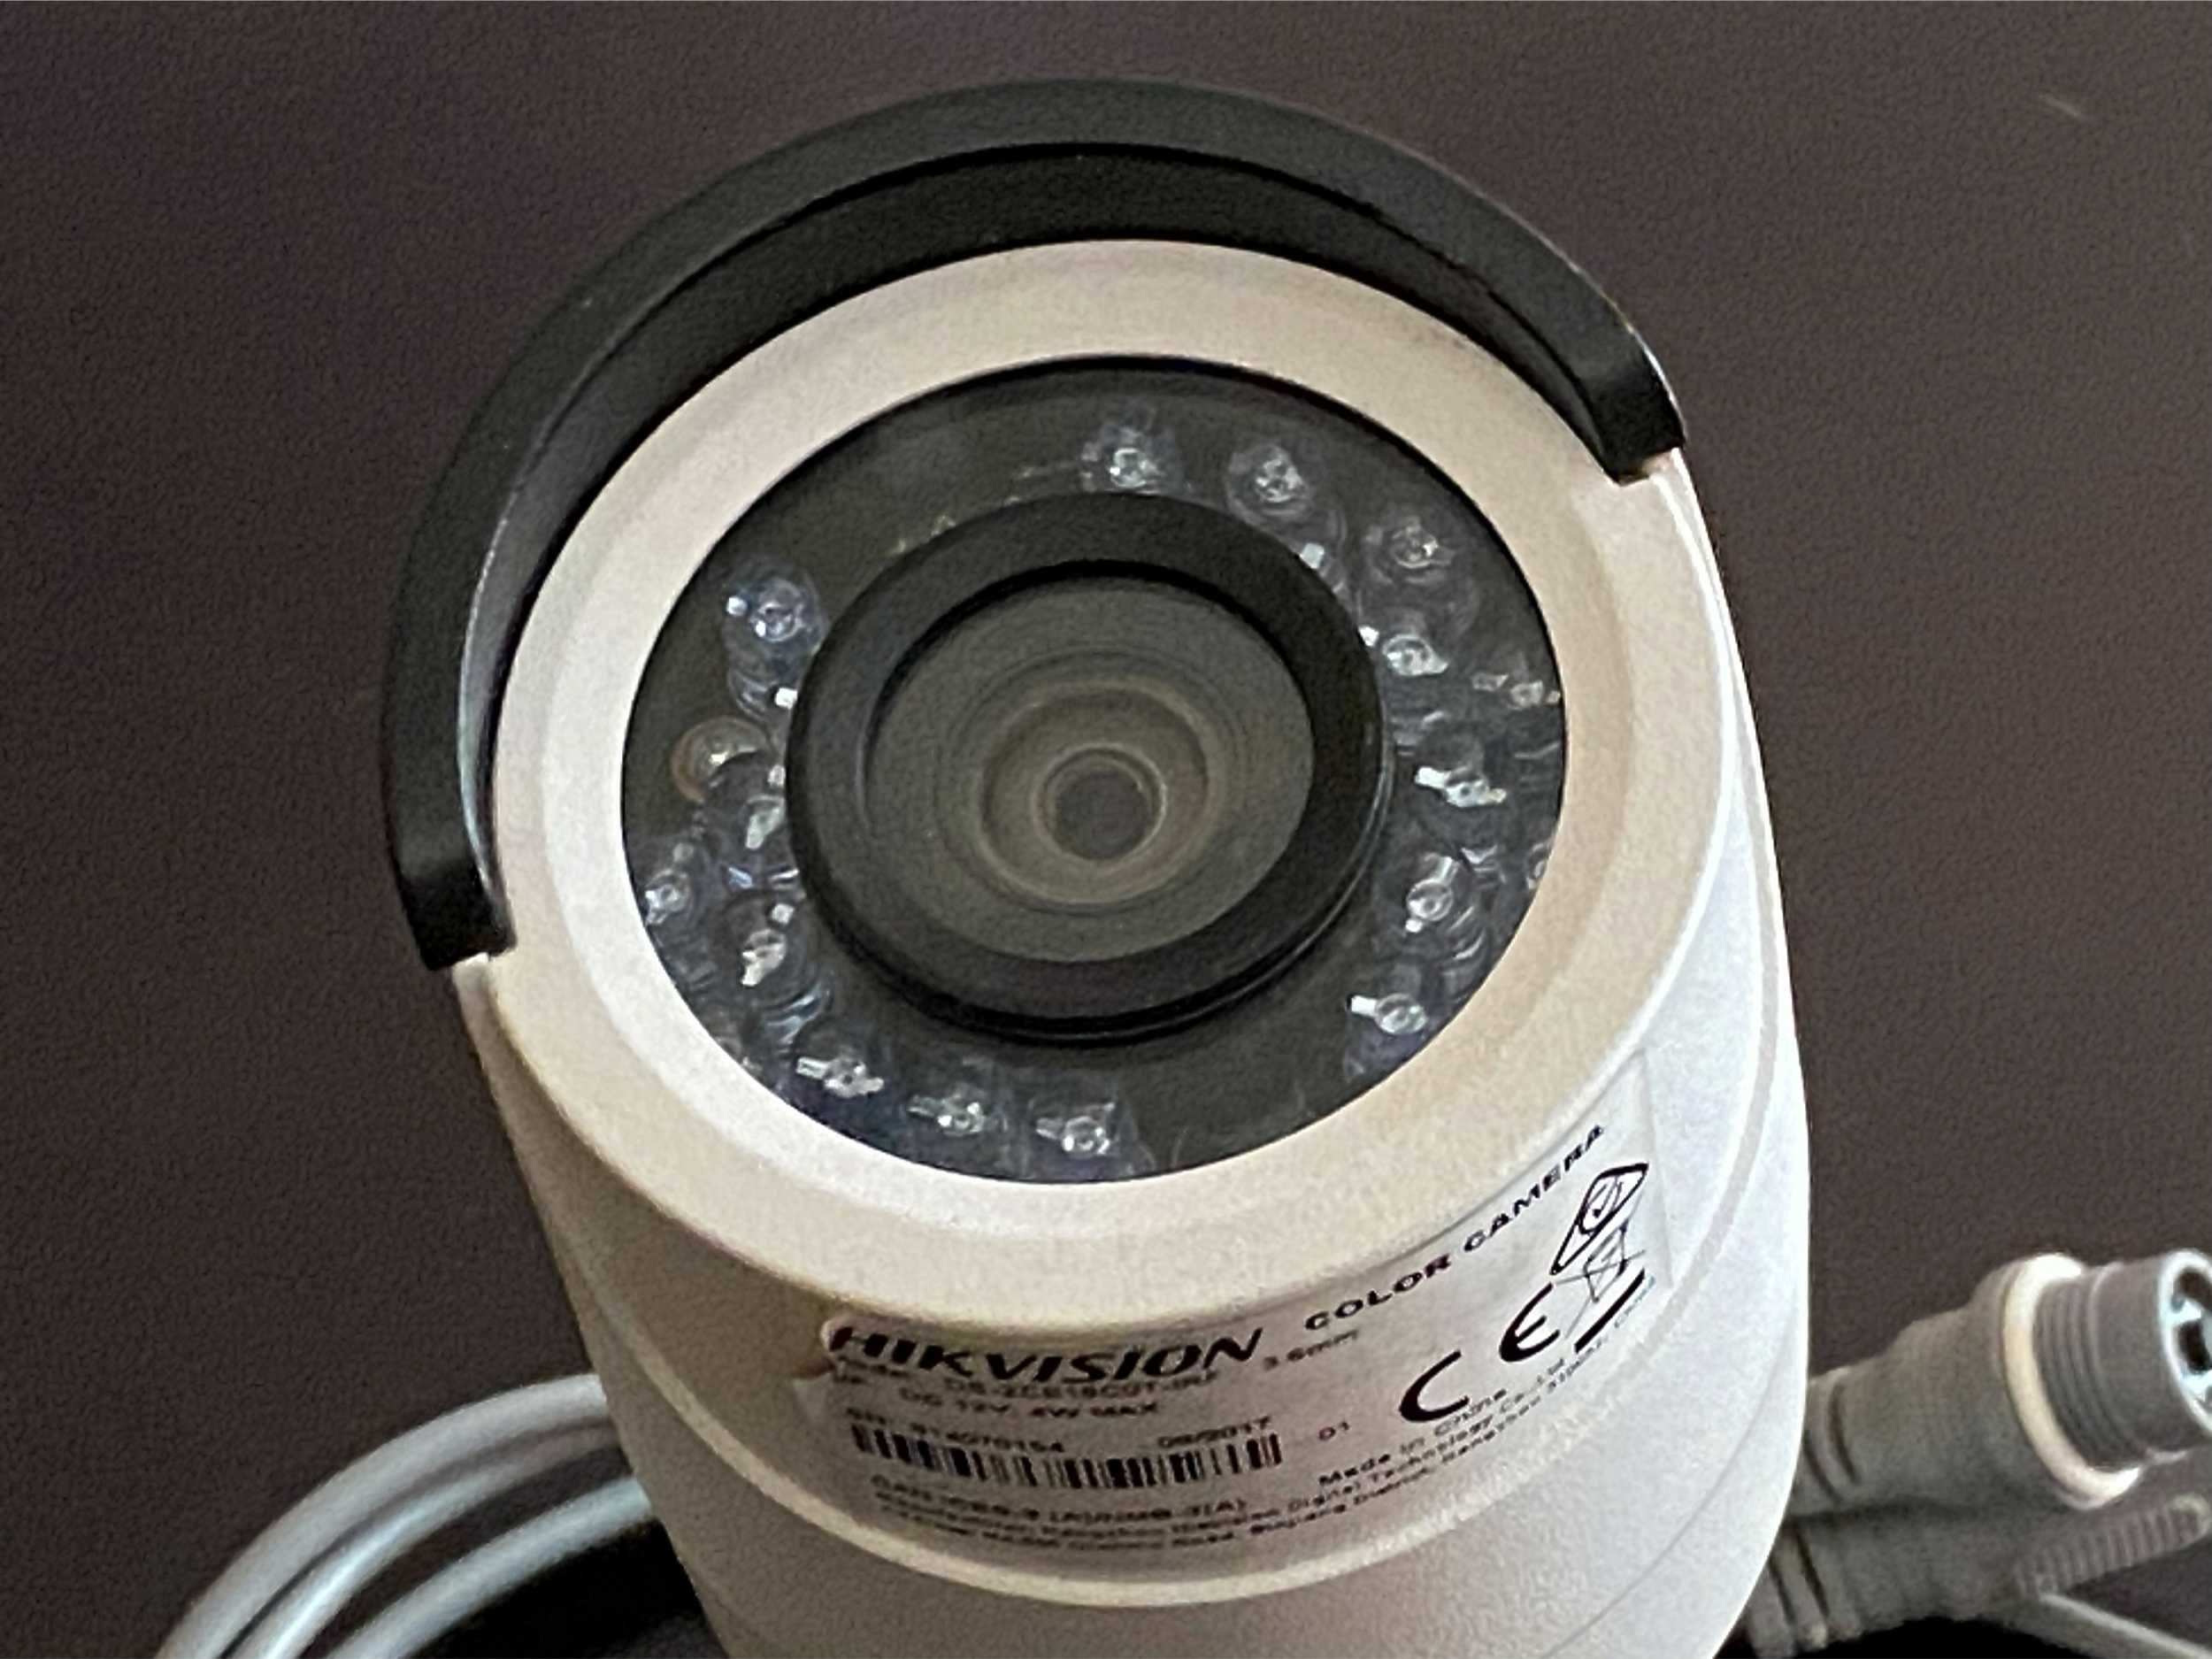 HD камера видео наблюдения Hikvision DS-2CE16D0T-IRF